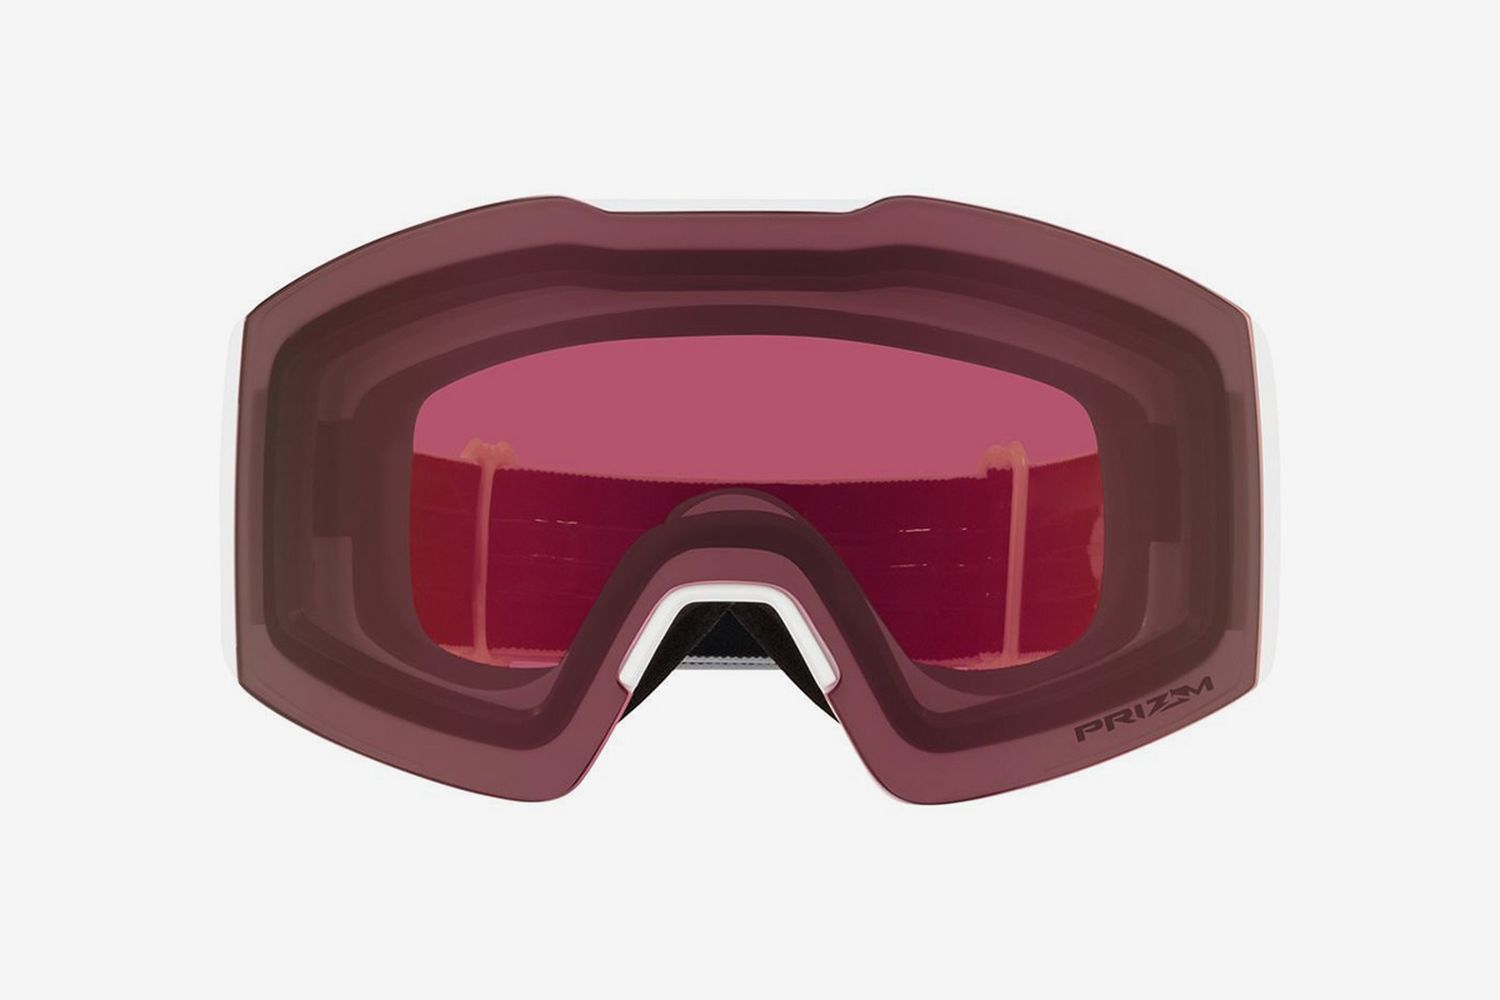 Prism Ski Goggles